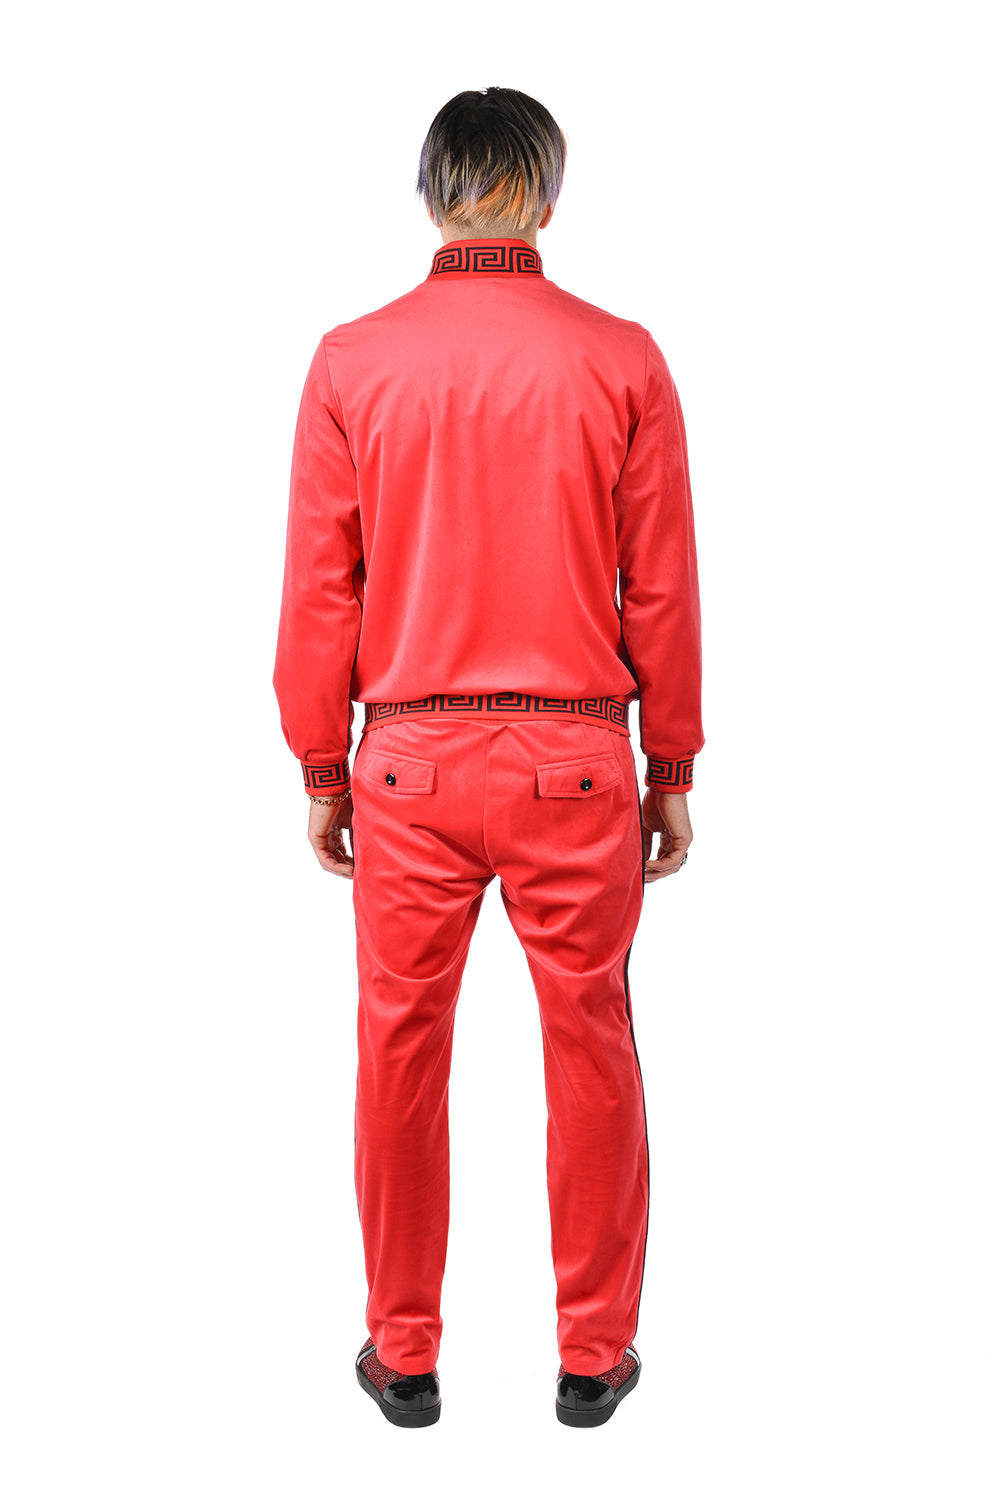 BARABAS Men's Casual Street Luxury Loungewear JJ900 Red